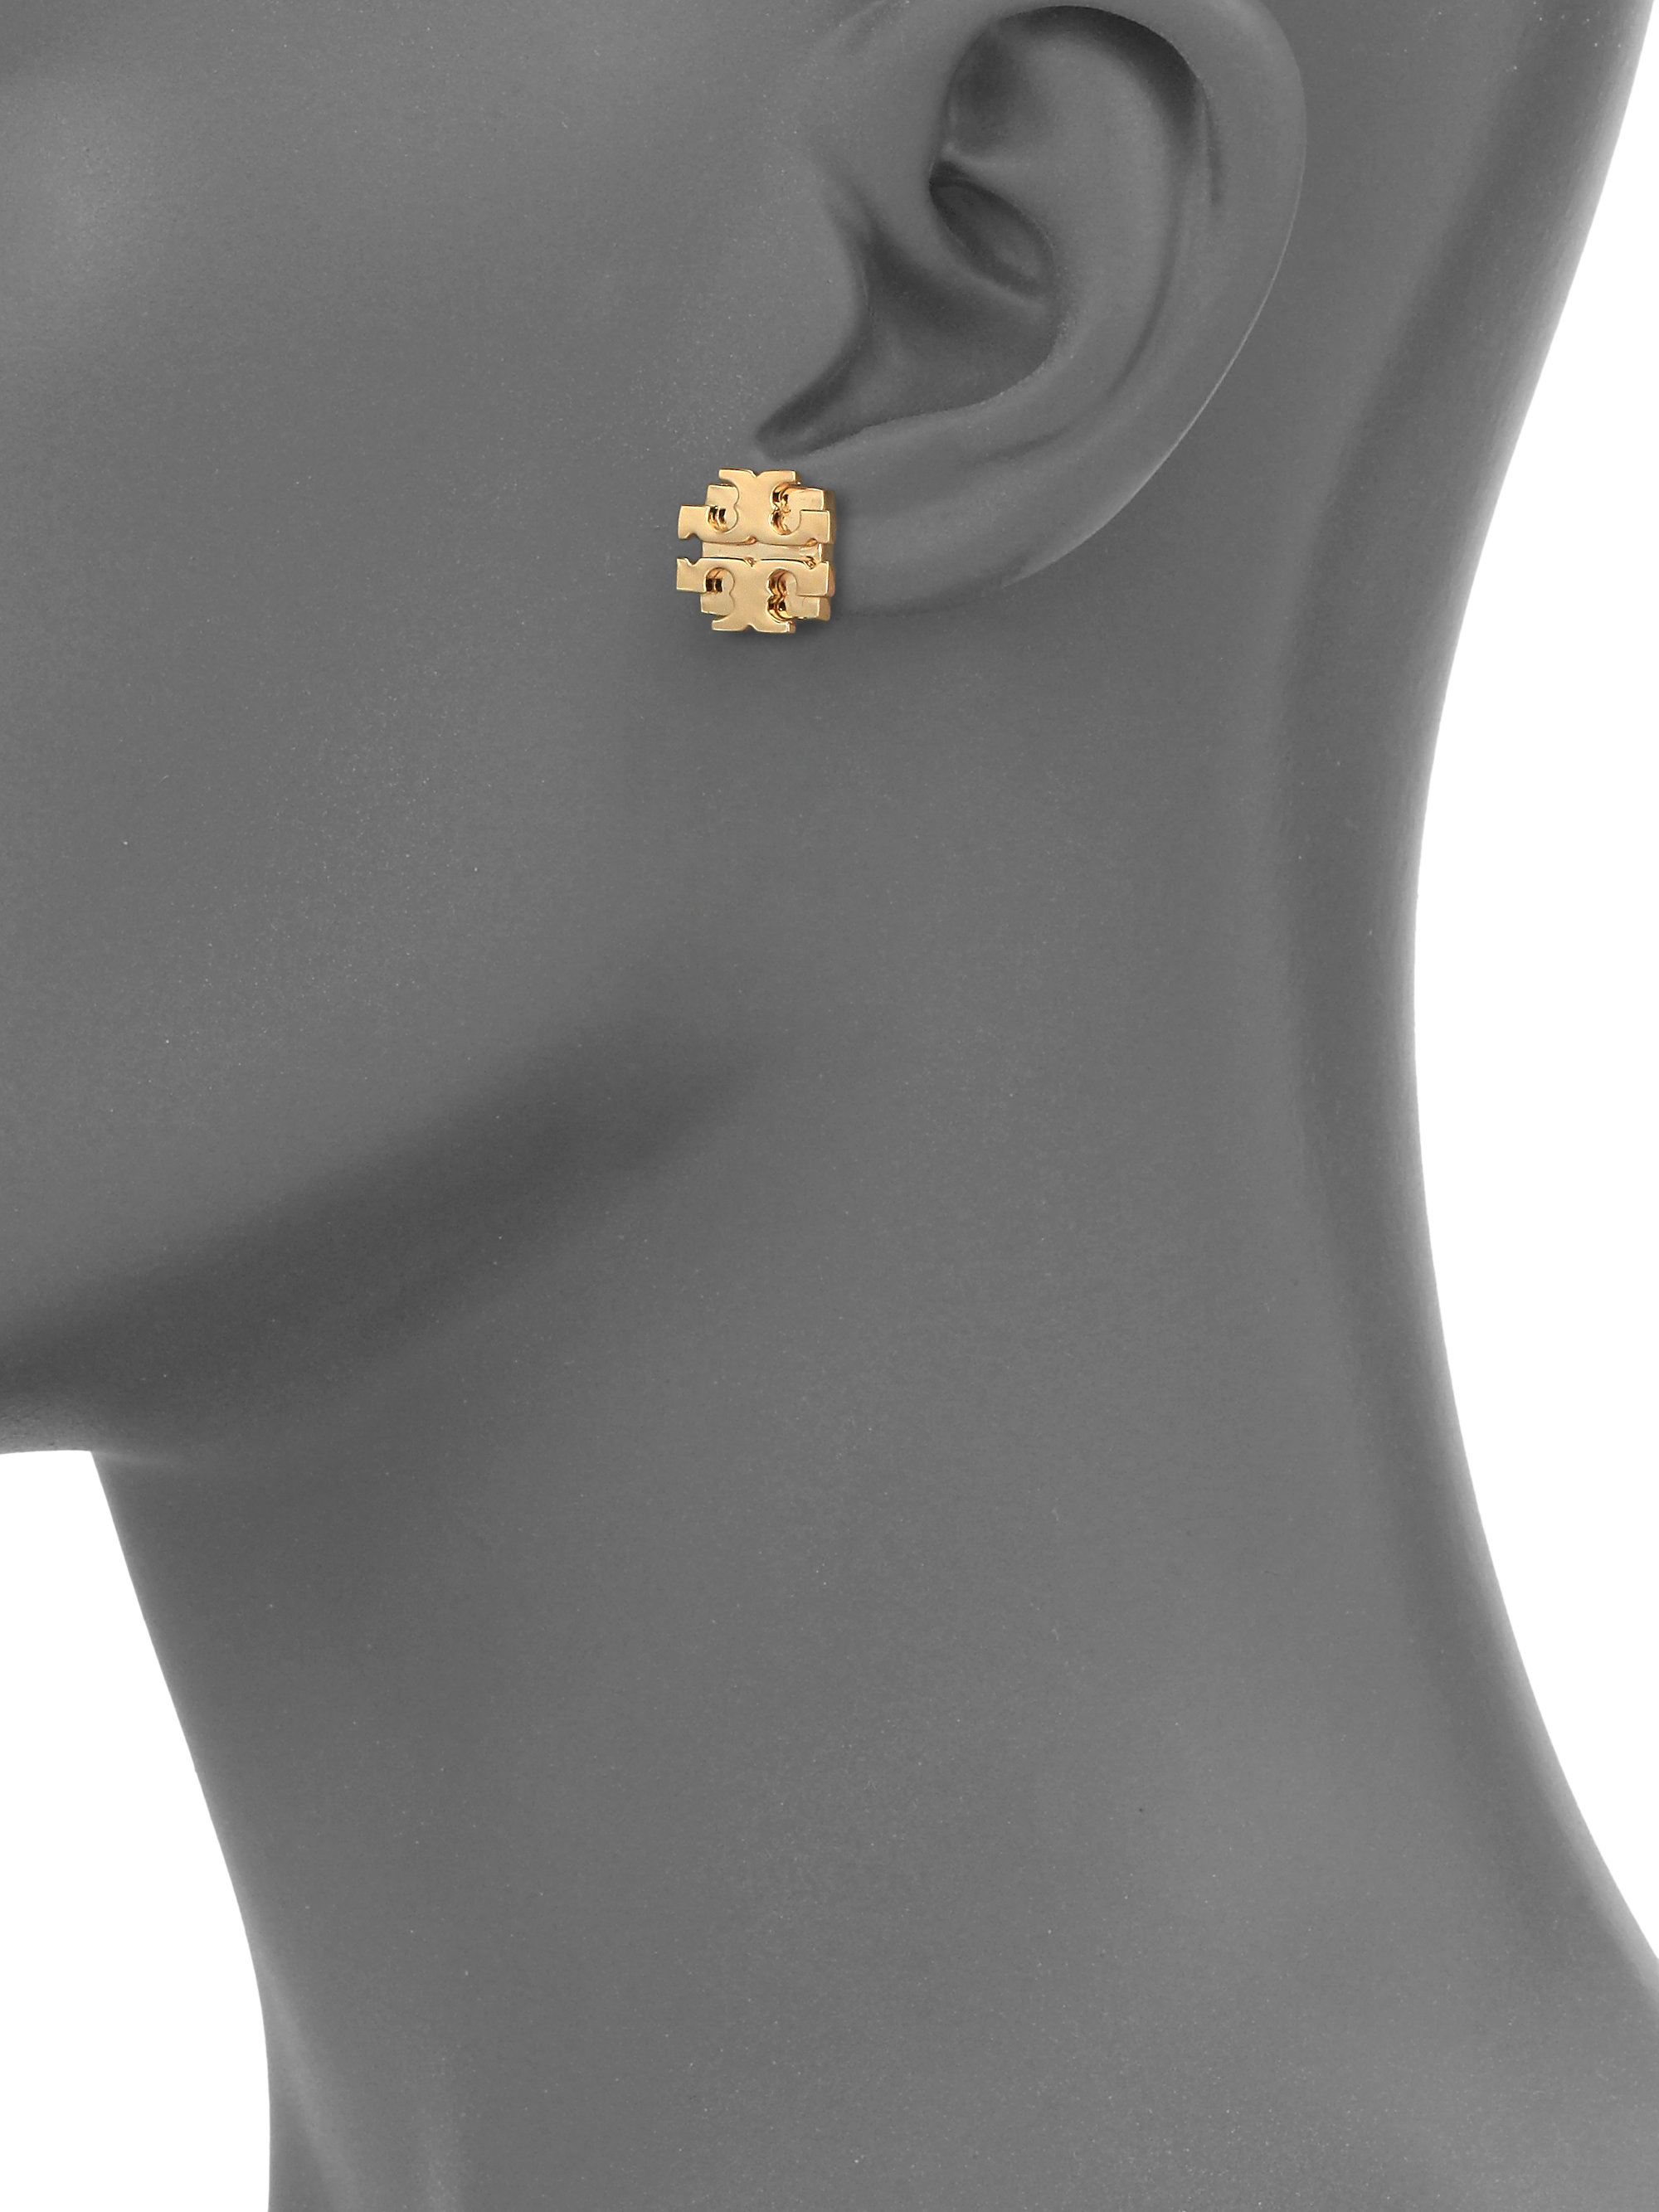 Tory Burch T Logo Large Stud Earrings/goldtone in Metallic | Lyst